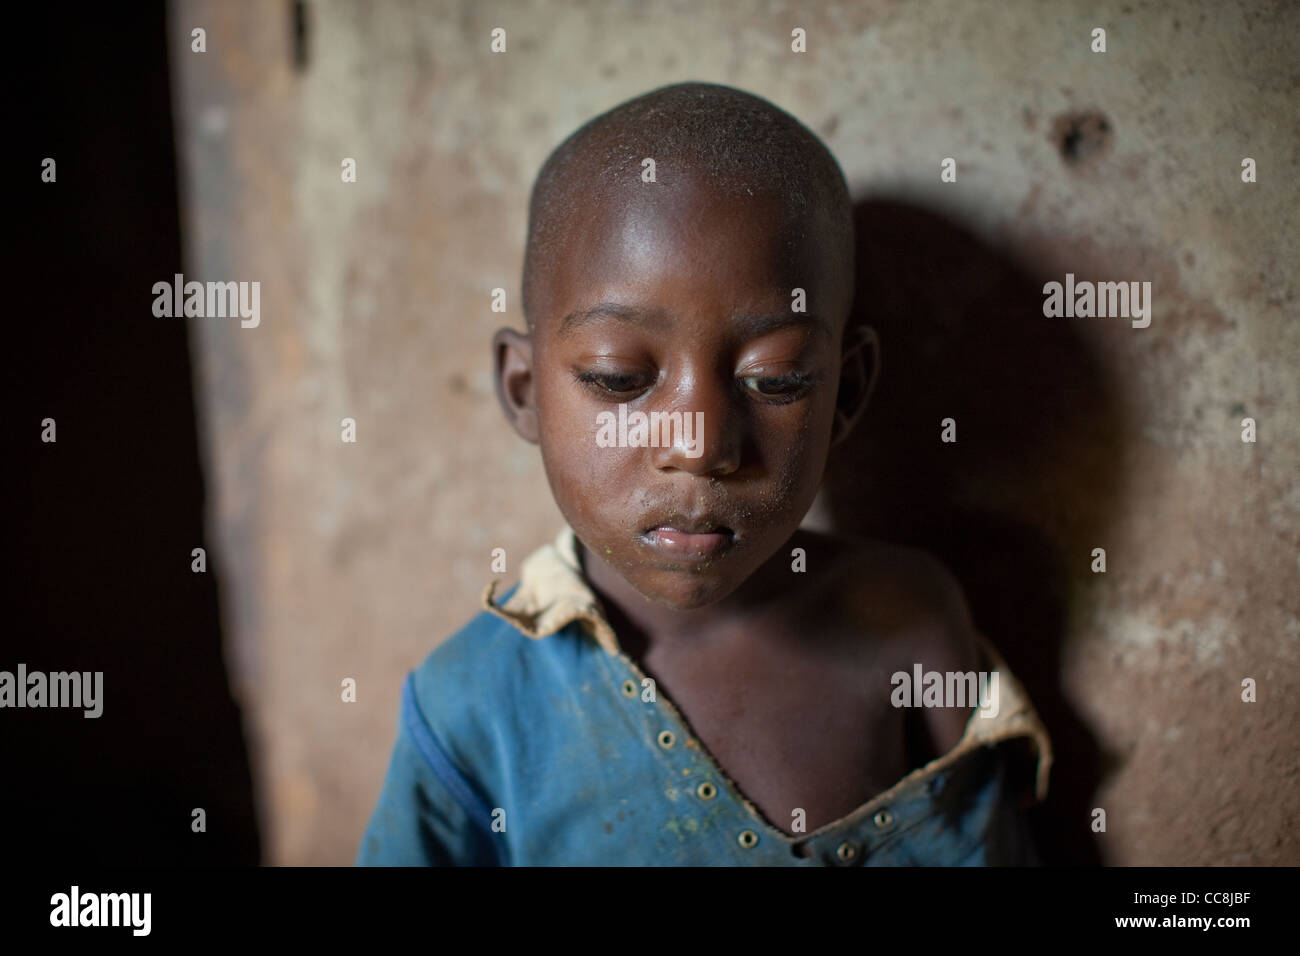 A boy inside his home in Masaka, Uganda, East Africa. Stock Photo